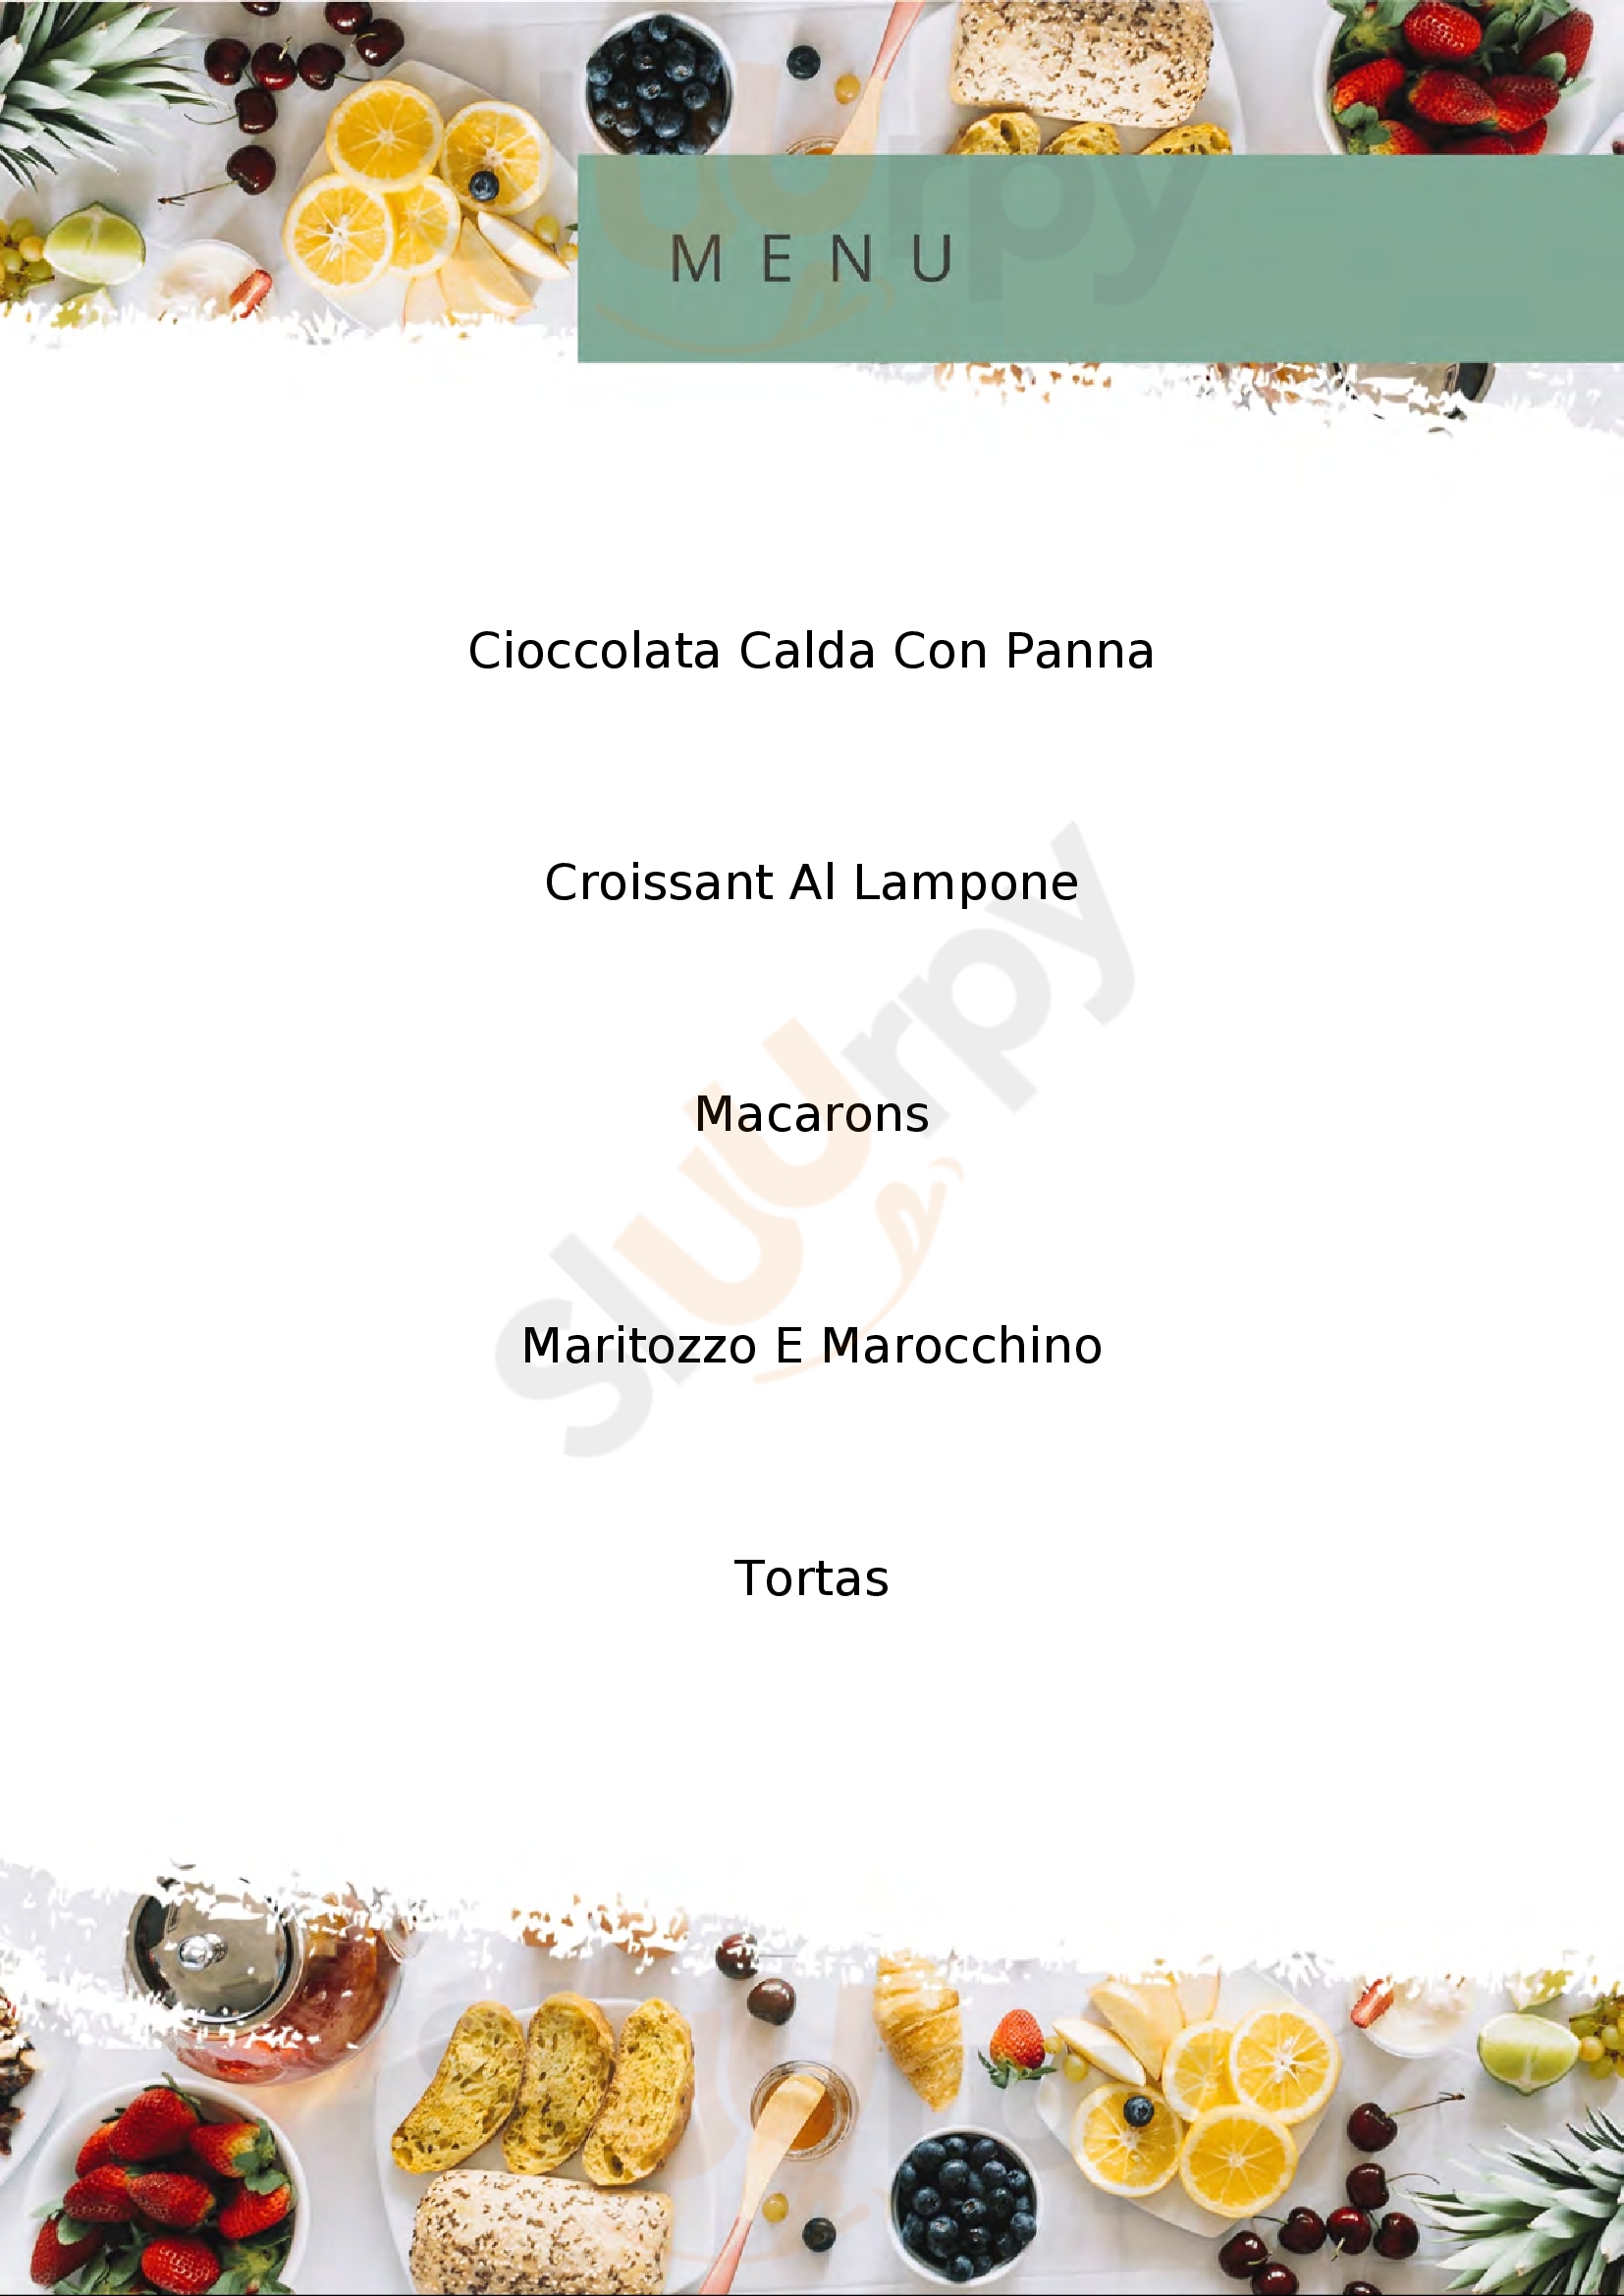 Pasticceria Ninin Casale Monferrato menù 1 pagina